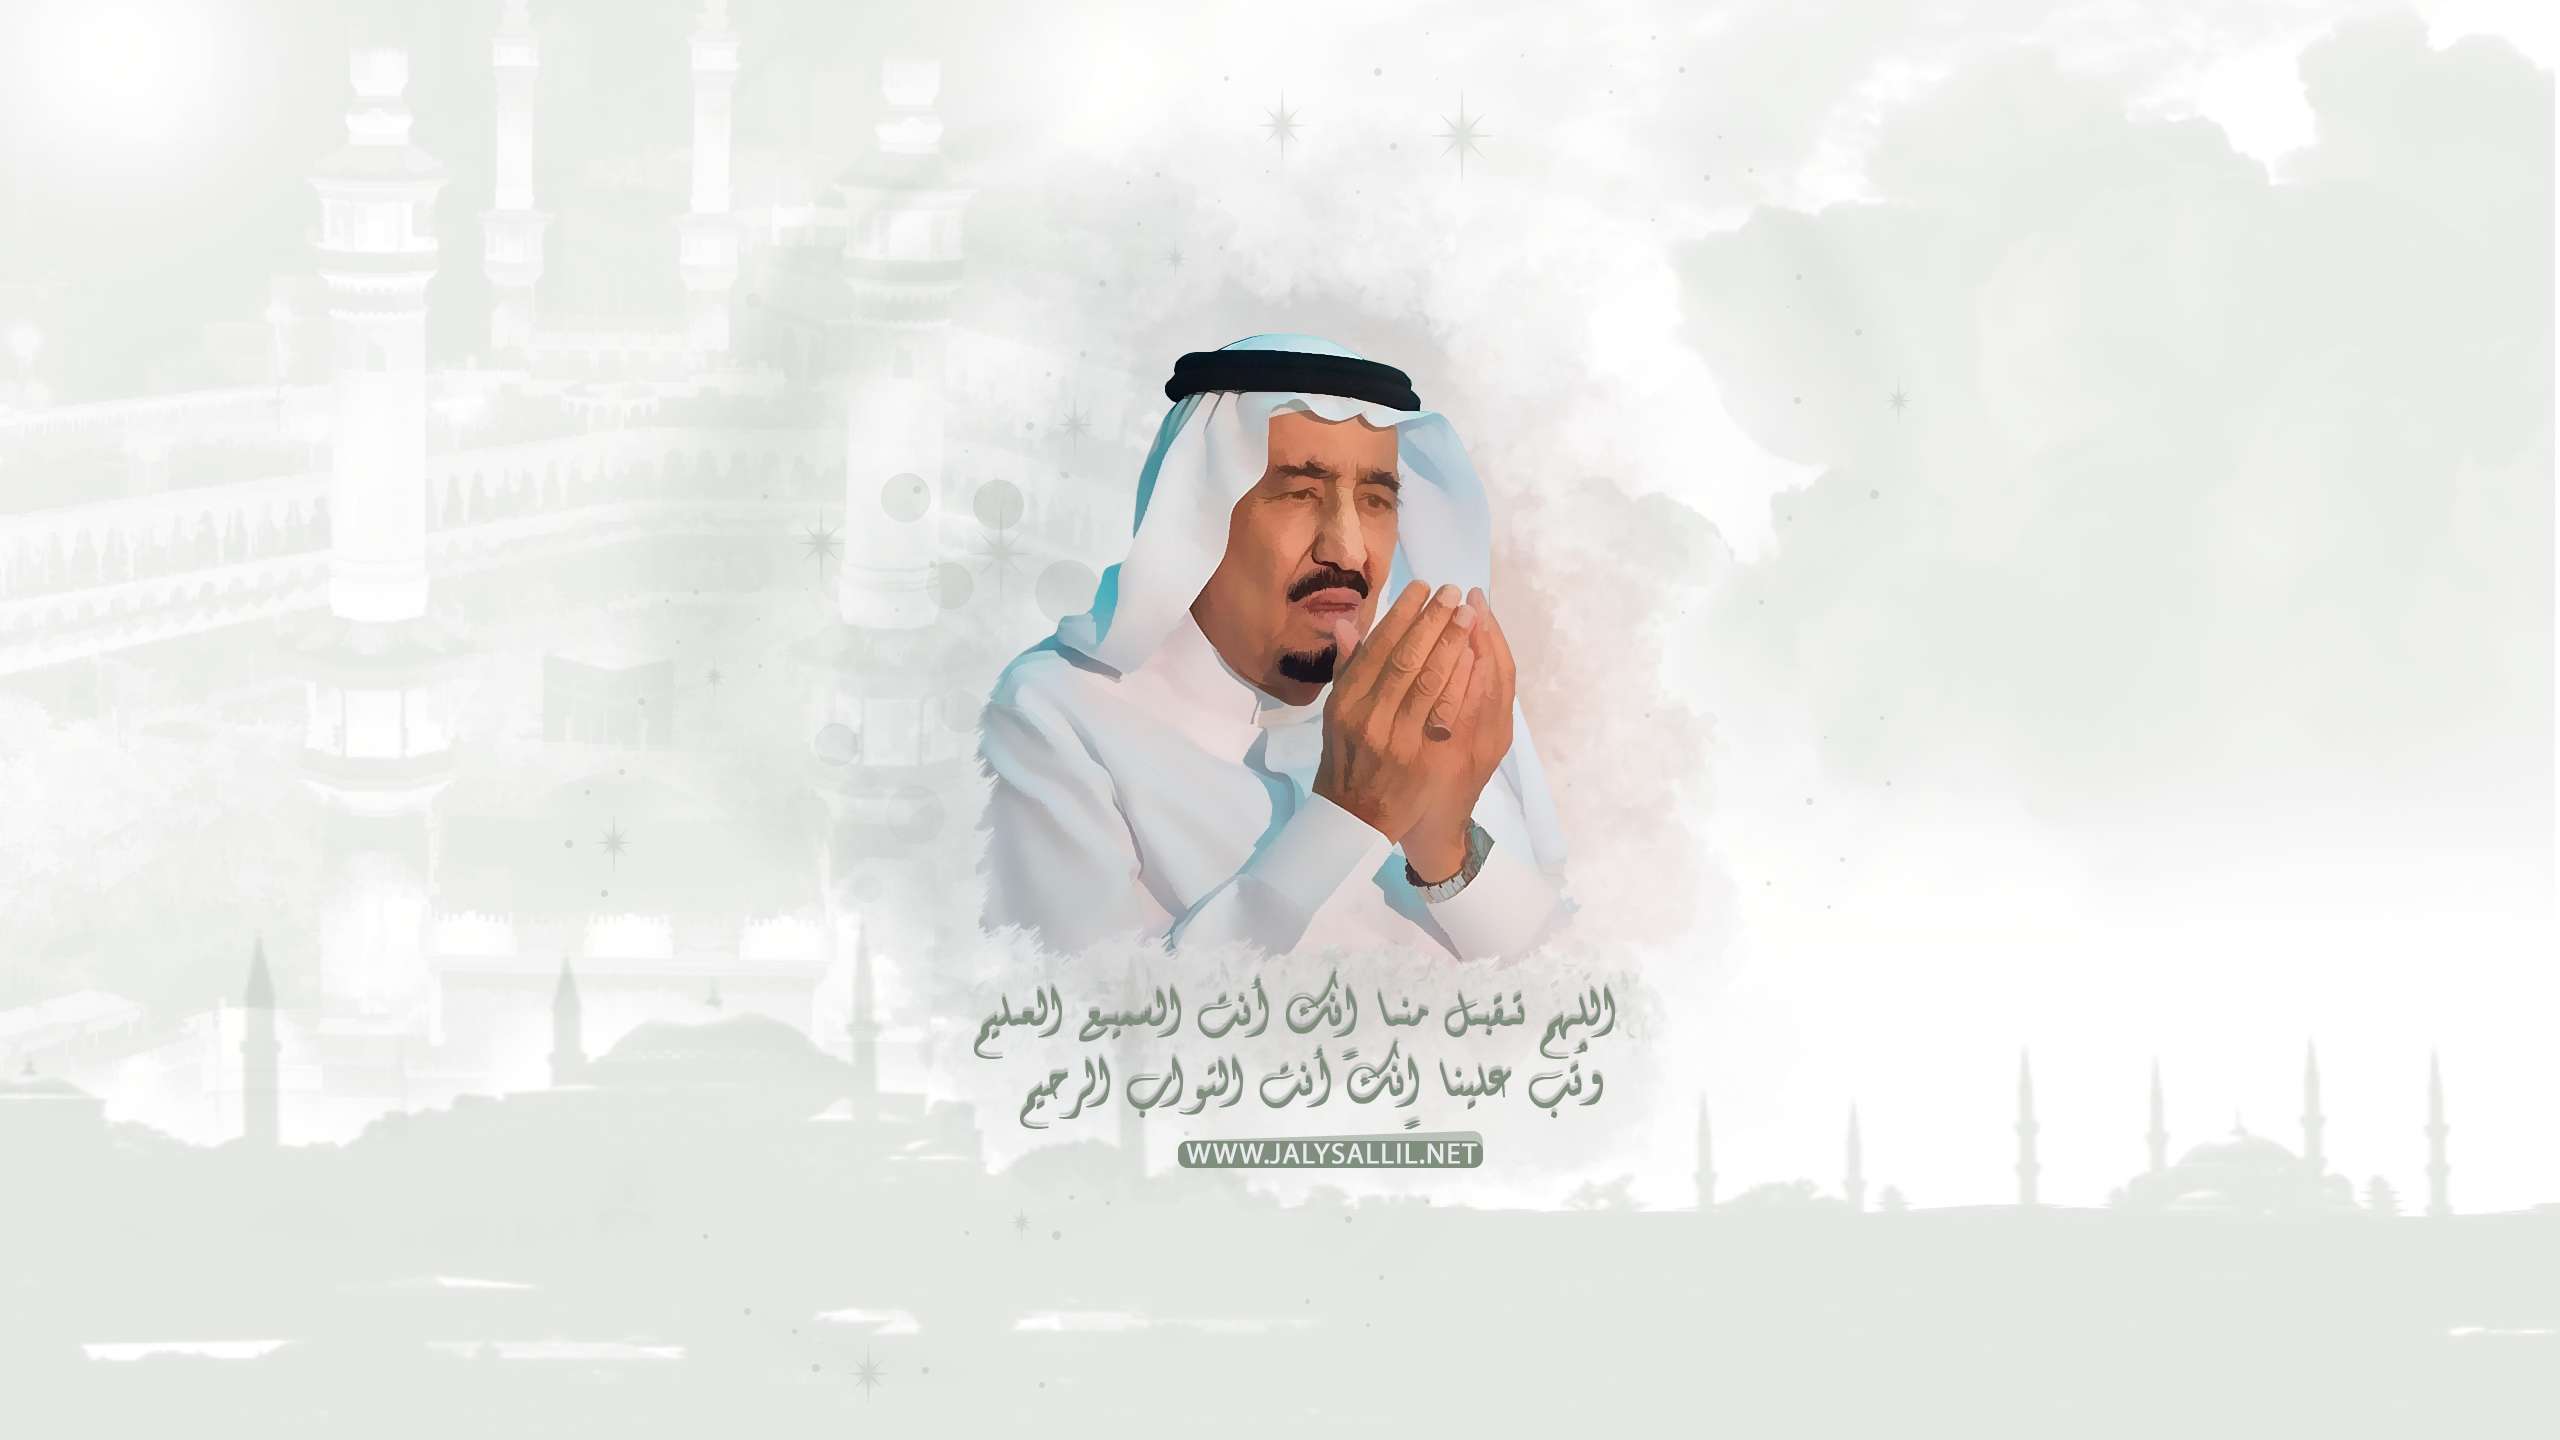 الملك سلمان بن عبدالعزيز تصميم